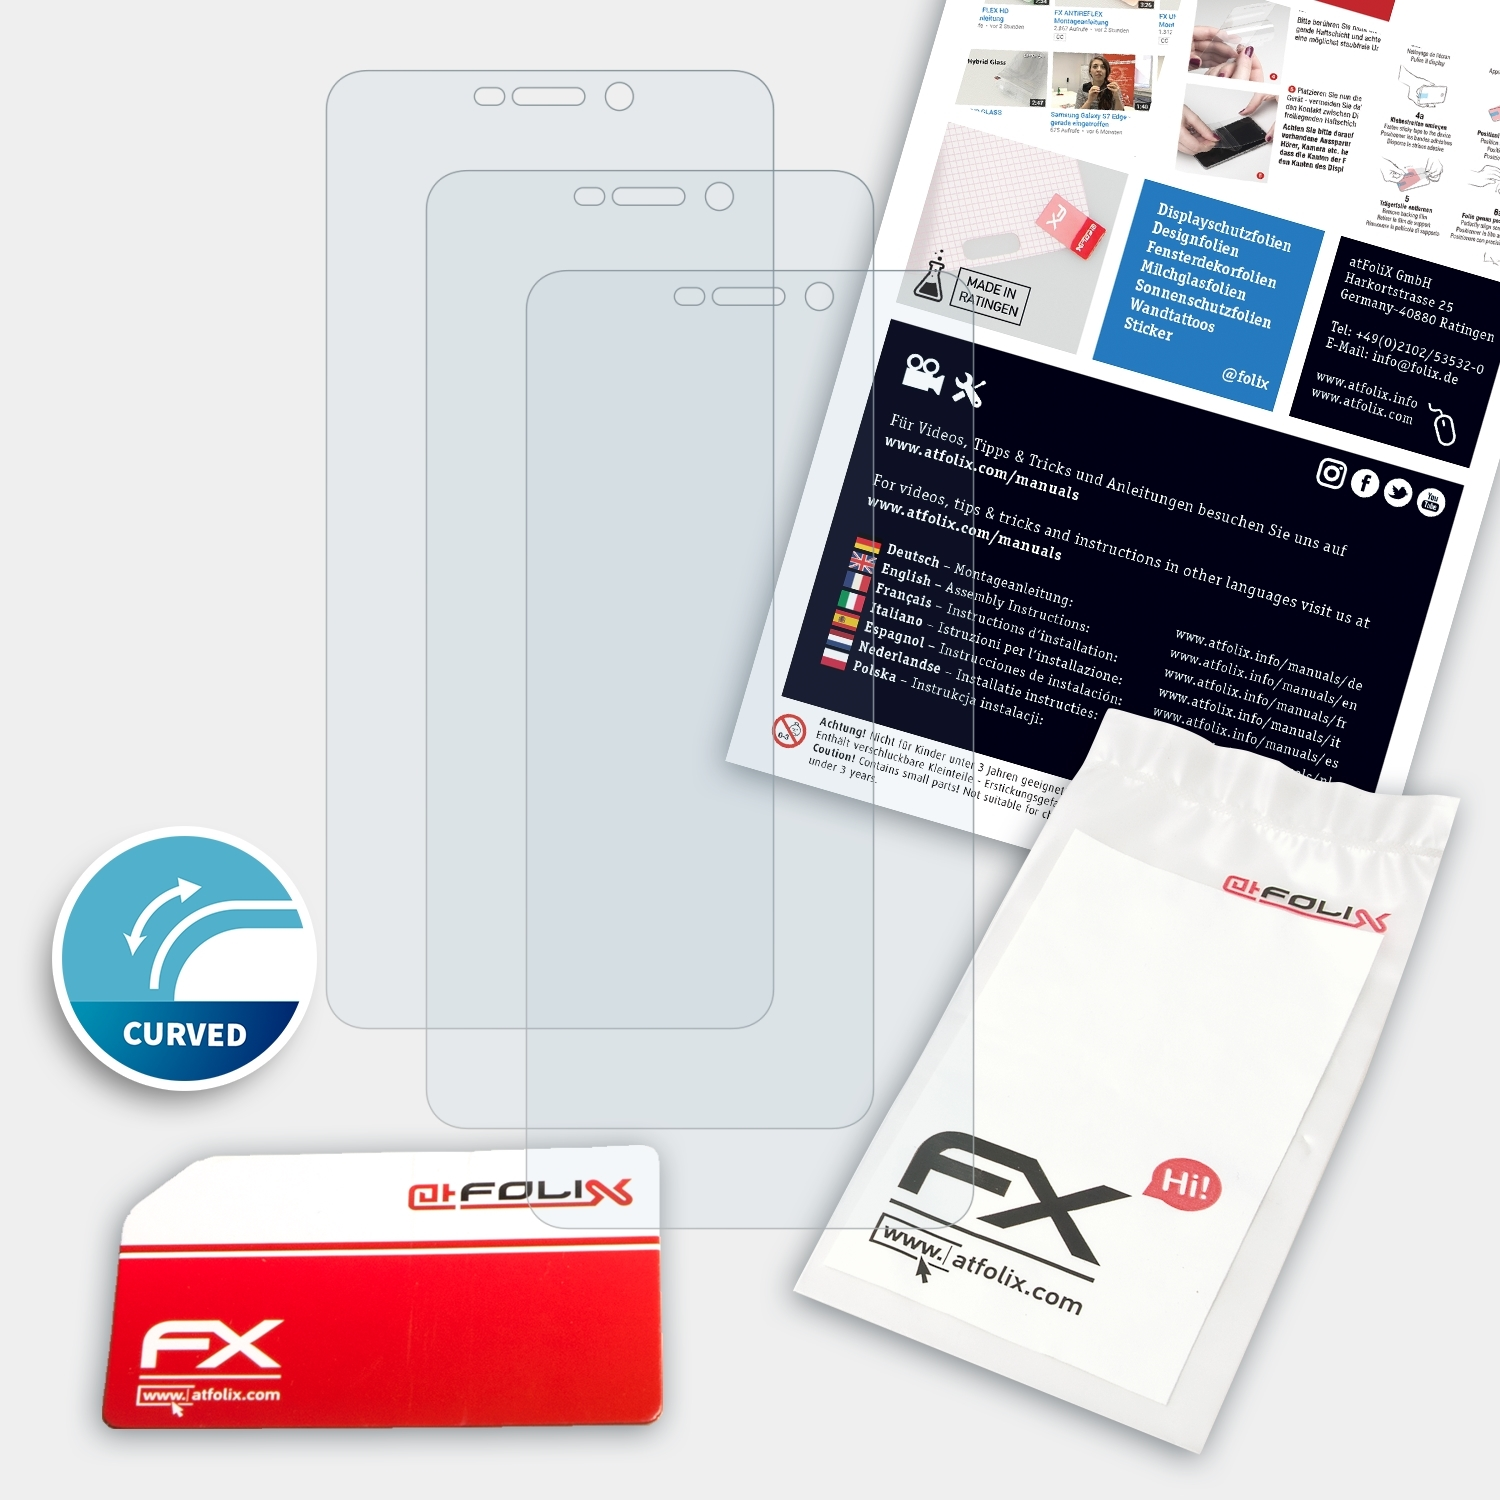 ATFOLIX 3x FX-ActiFleX Displayschutz(für Wiko Ride 4G)